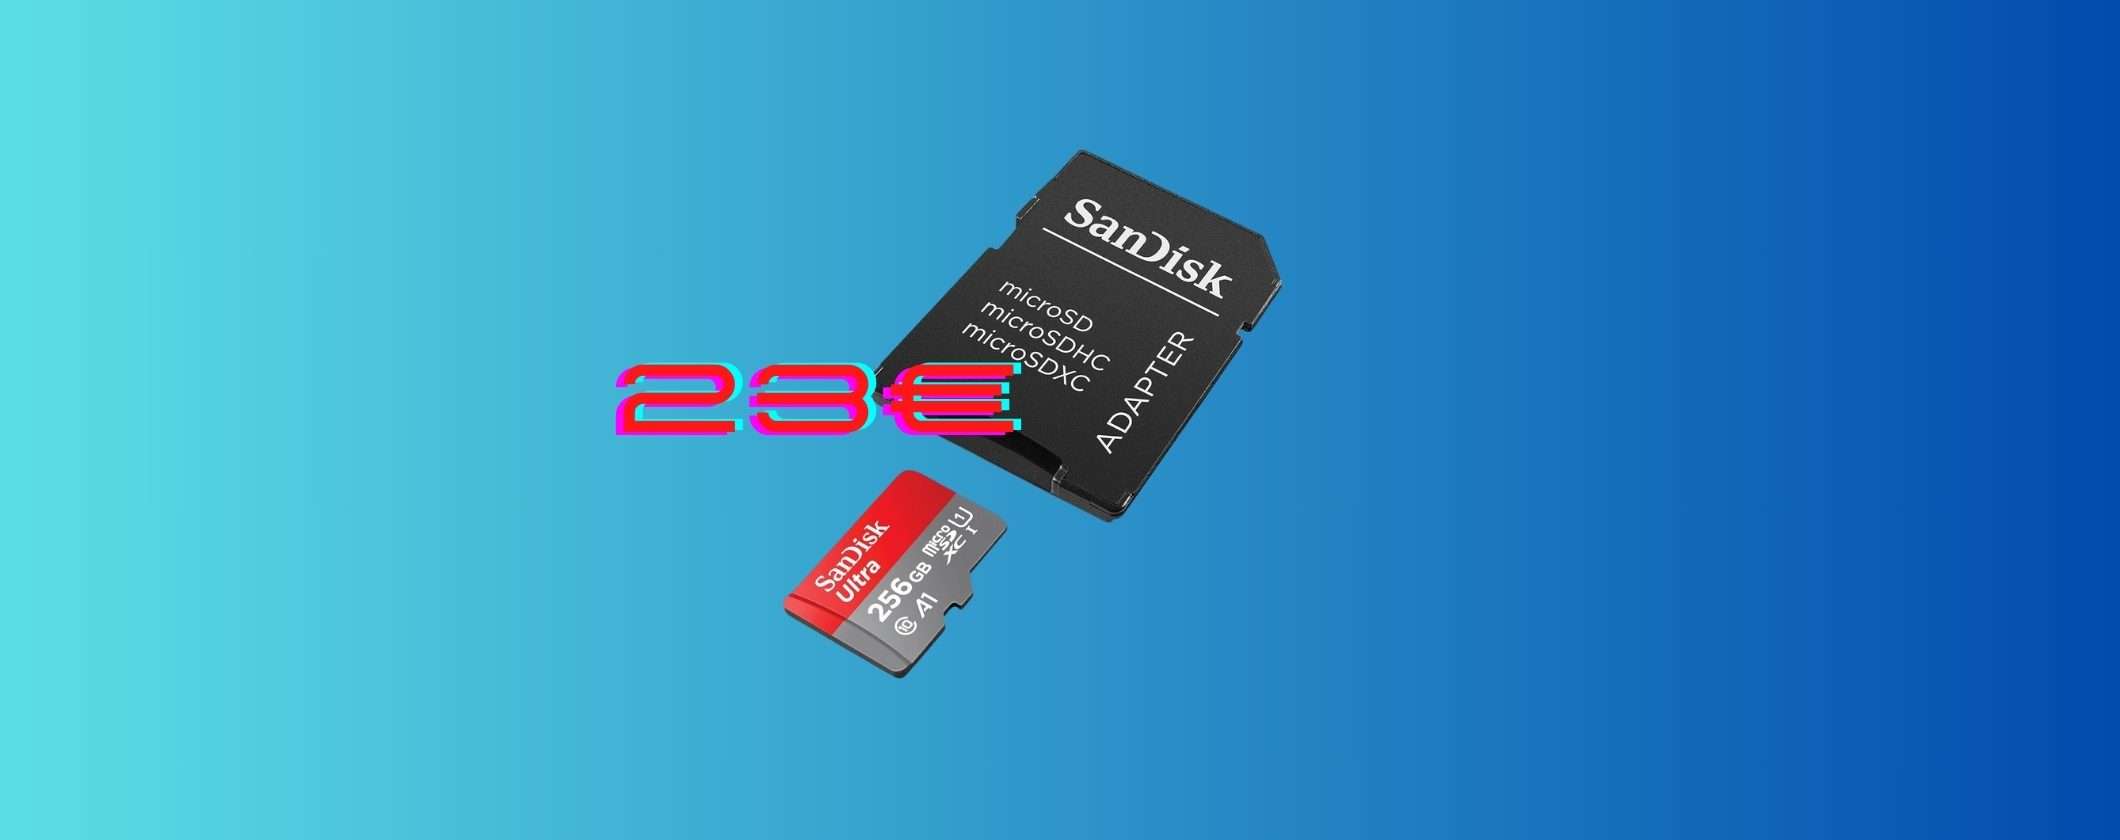 MicroSD SanDisk 256GB: solo 23€ alle Offerte di Primavera Amazon